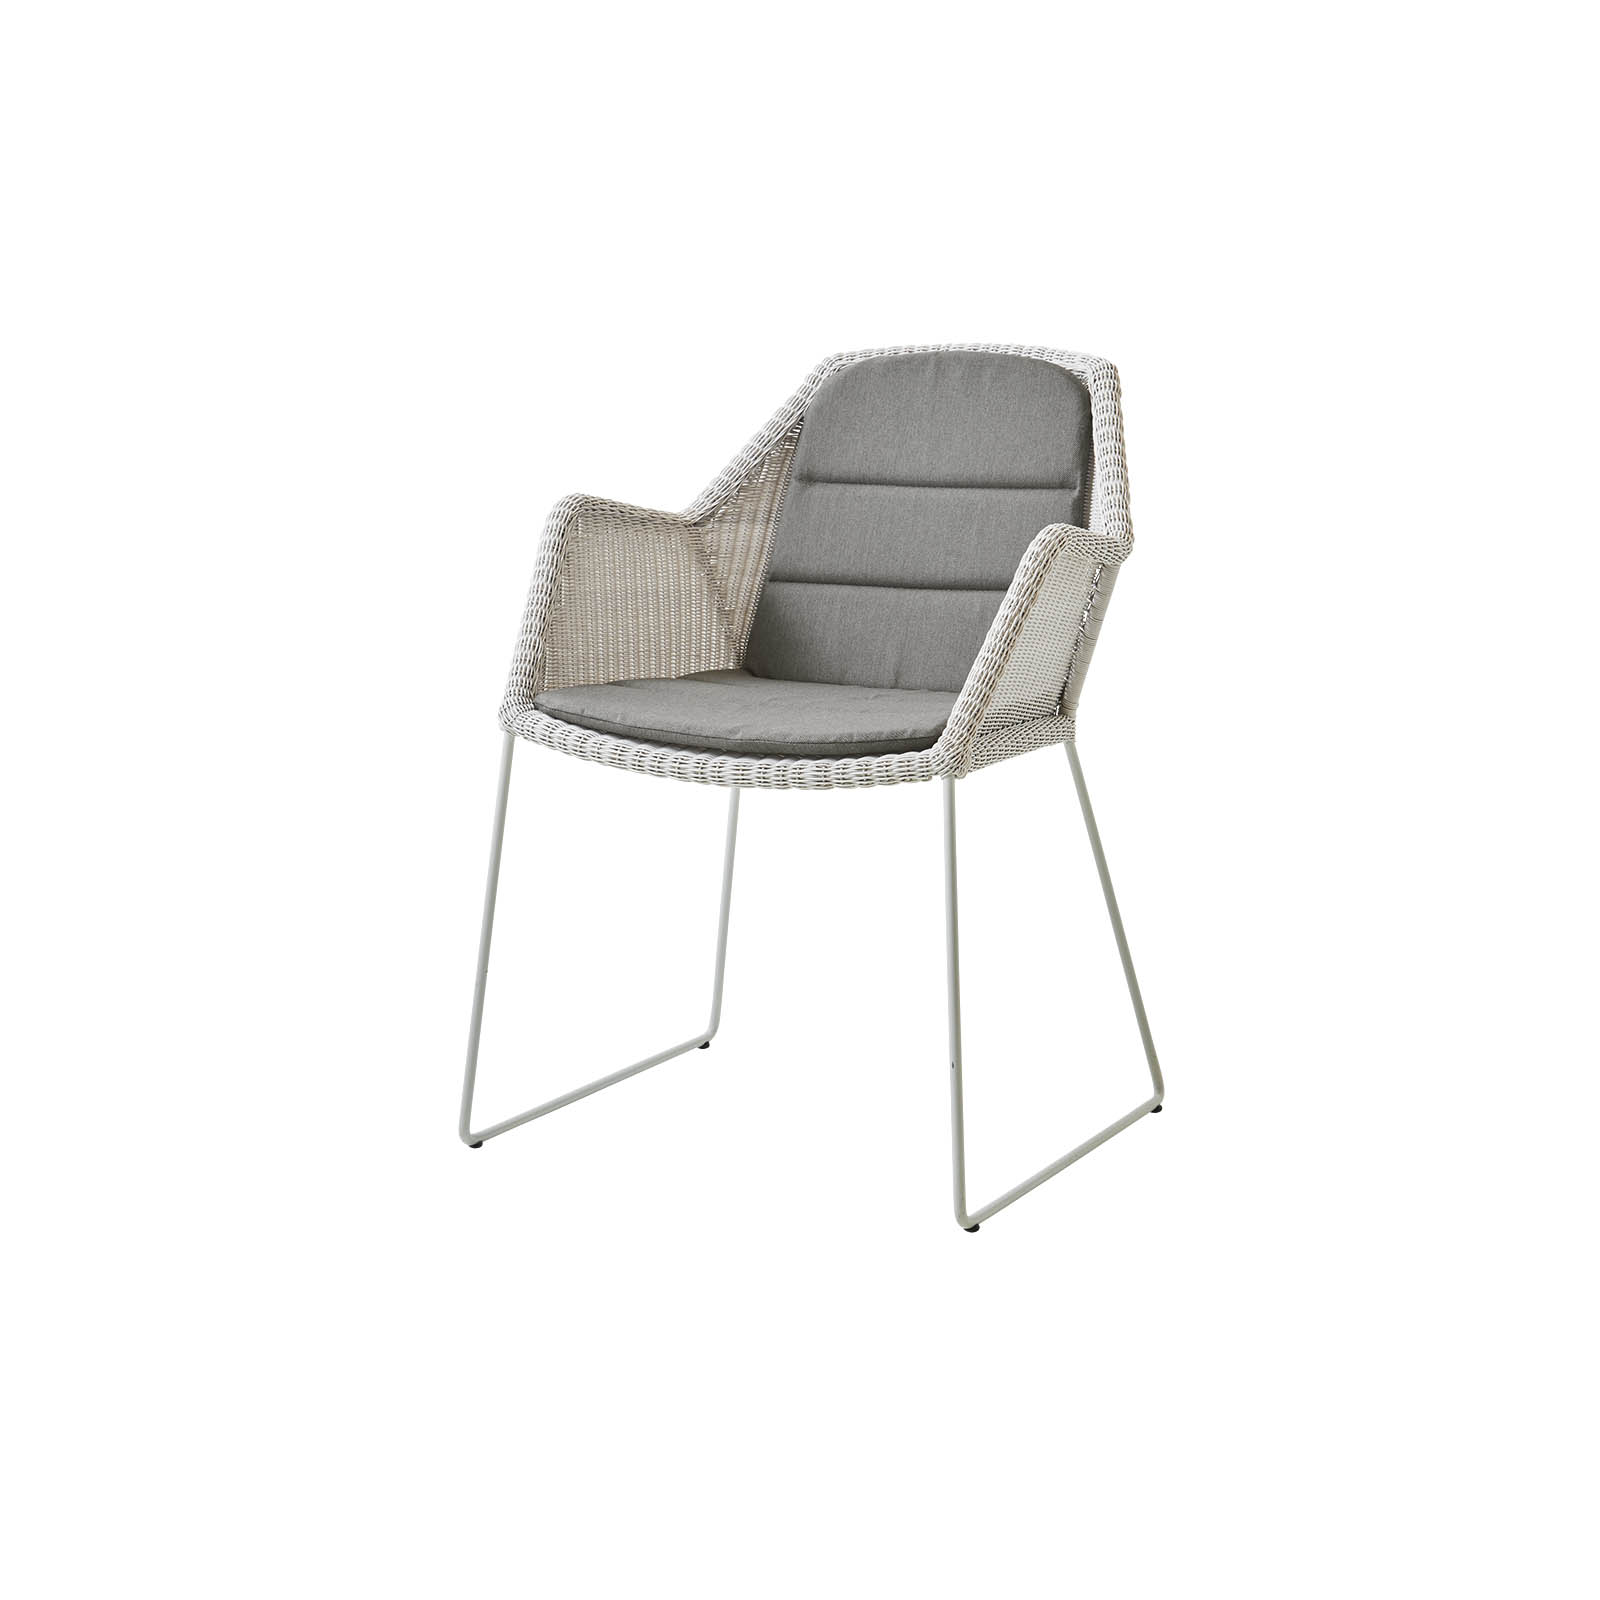 Breeze Stuhl aus Cane-line Weave in White Grey mit Kissen aus Cane-line Natté in Taupe